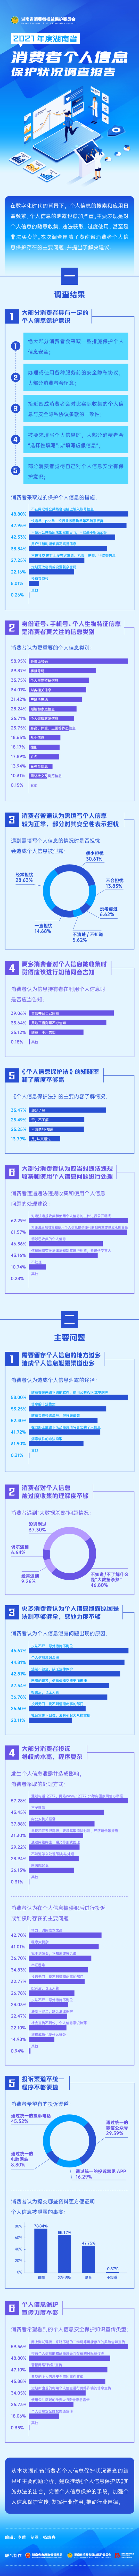 2021年度湖南省消费者个人信息保护状况调查报告.jpg